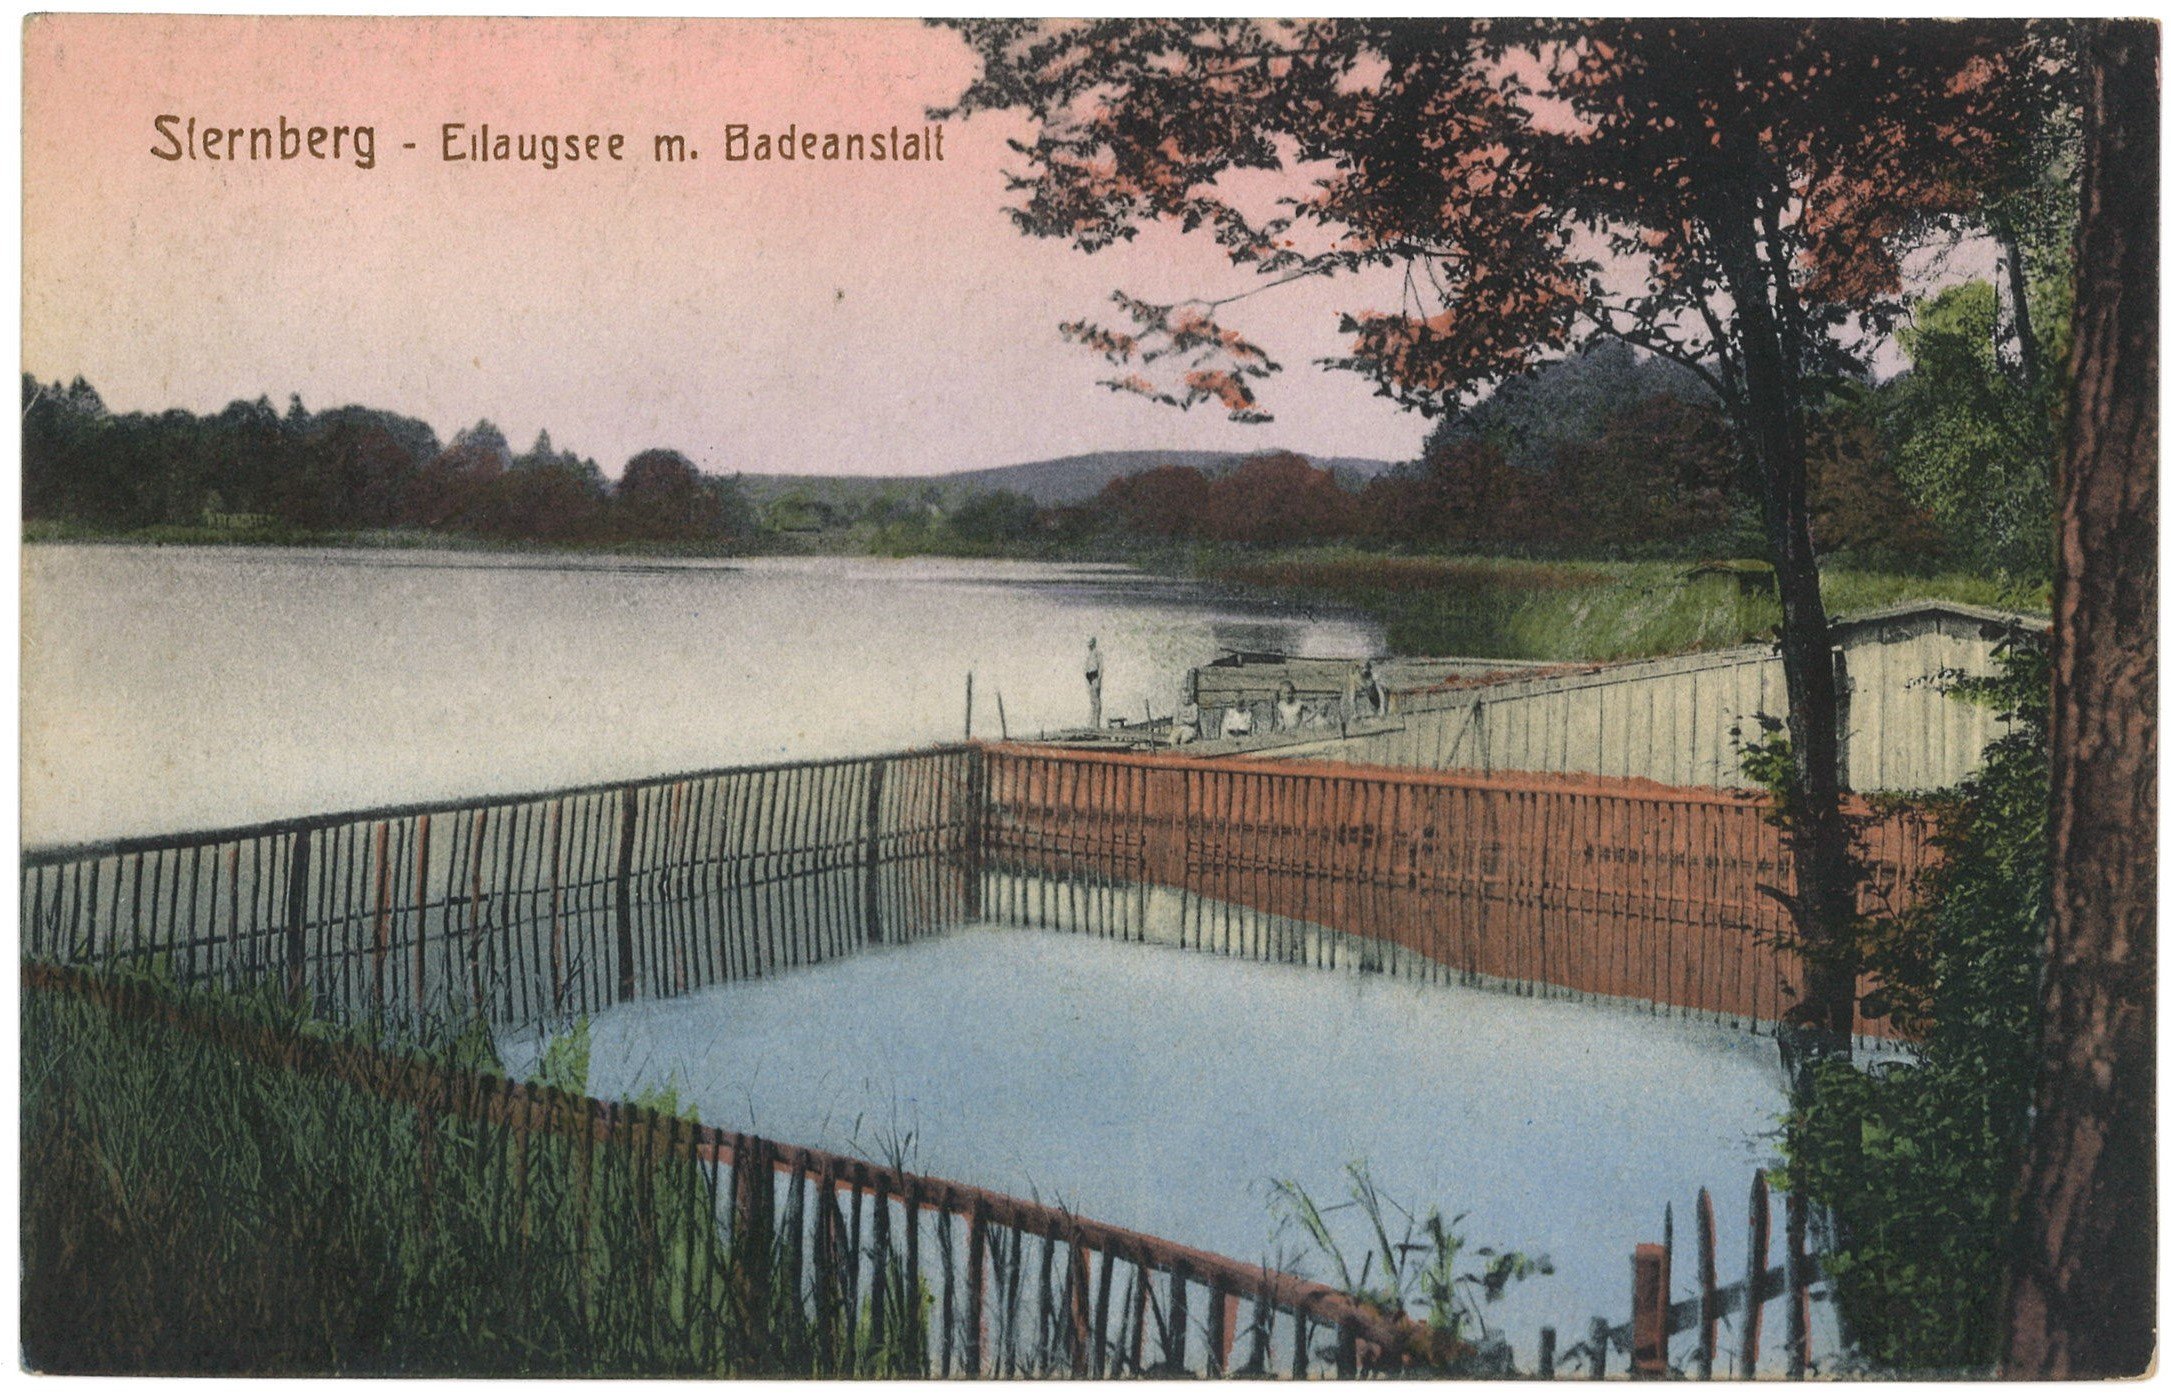 Sternberg [Torzym]: Badeanstalt am Eilangsee (Landesgeschichtliche Vereinigung für die Mark Brandenburg e.V., Archiv CC BY)